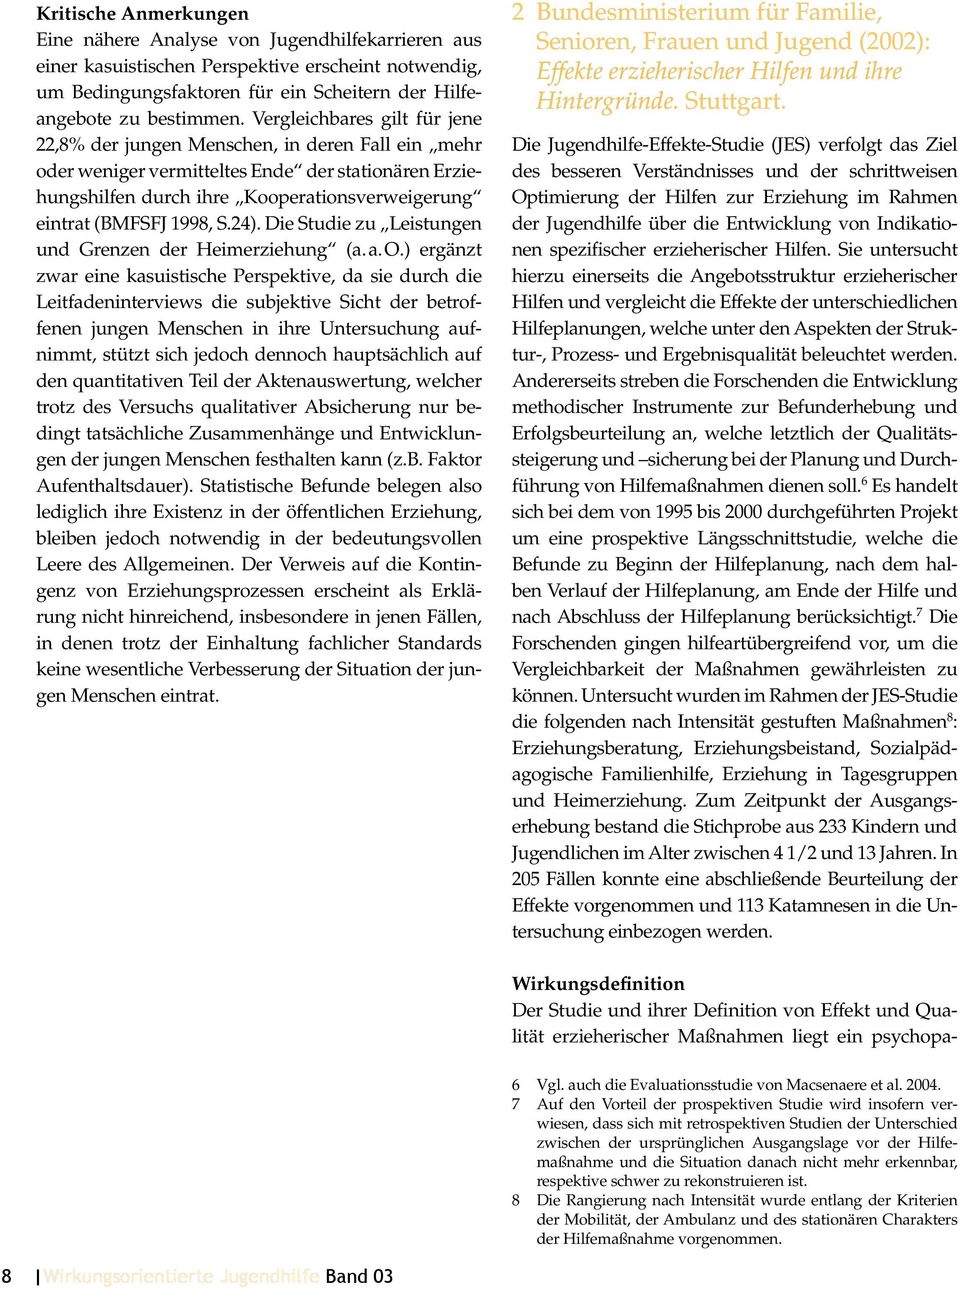 1998, S.24). Die Studie zu Leistungen und Grenzen der Heimerziehung (a. a. O.